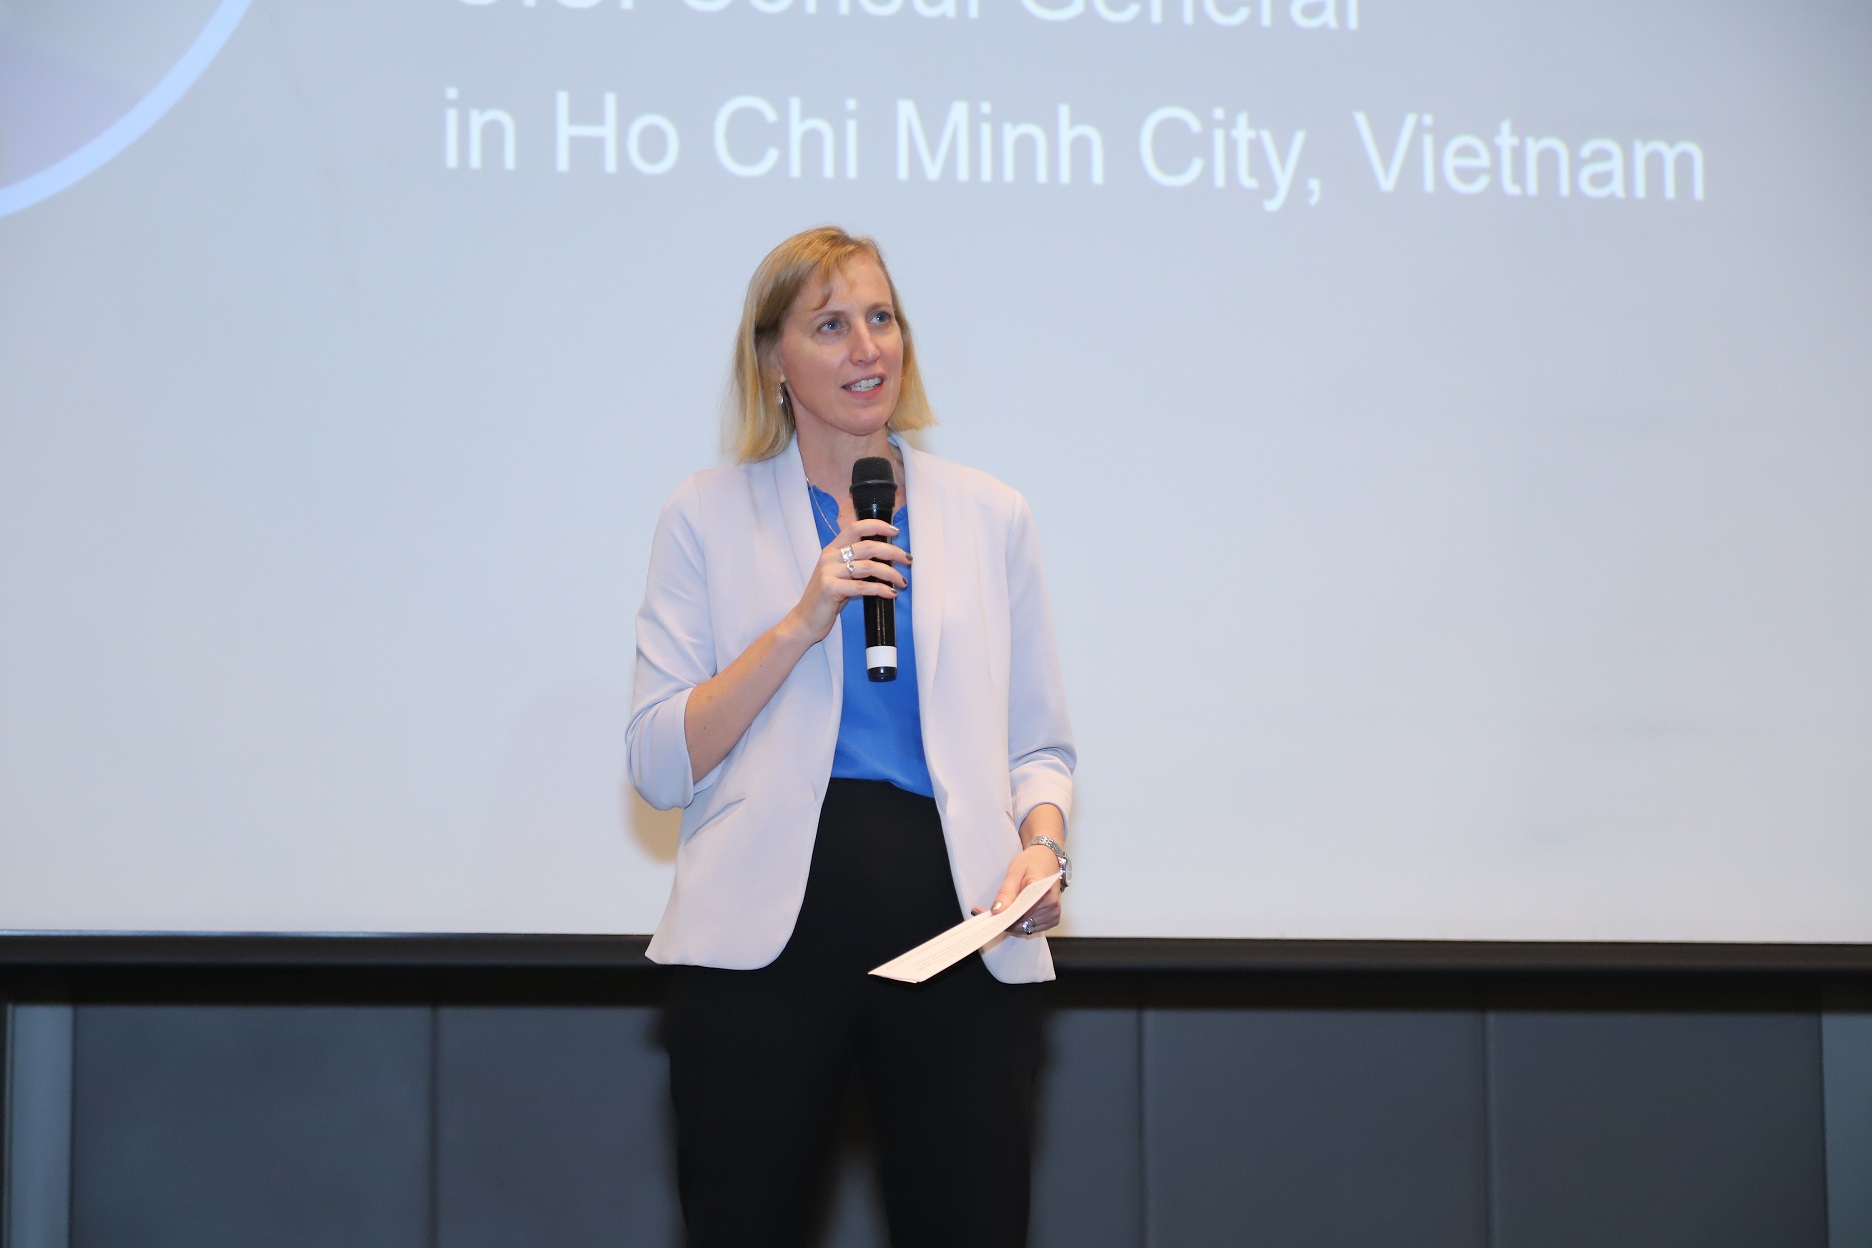 Trung tâm Thiết kế Vi mạch lớn, hướng đến AI và công nghệ đám mây của Marvell được đặt tại Việt Nam - Ba Susan Burns Tong lanh su Hoa Ky tai TP. Ho Chi Minh